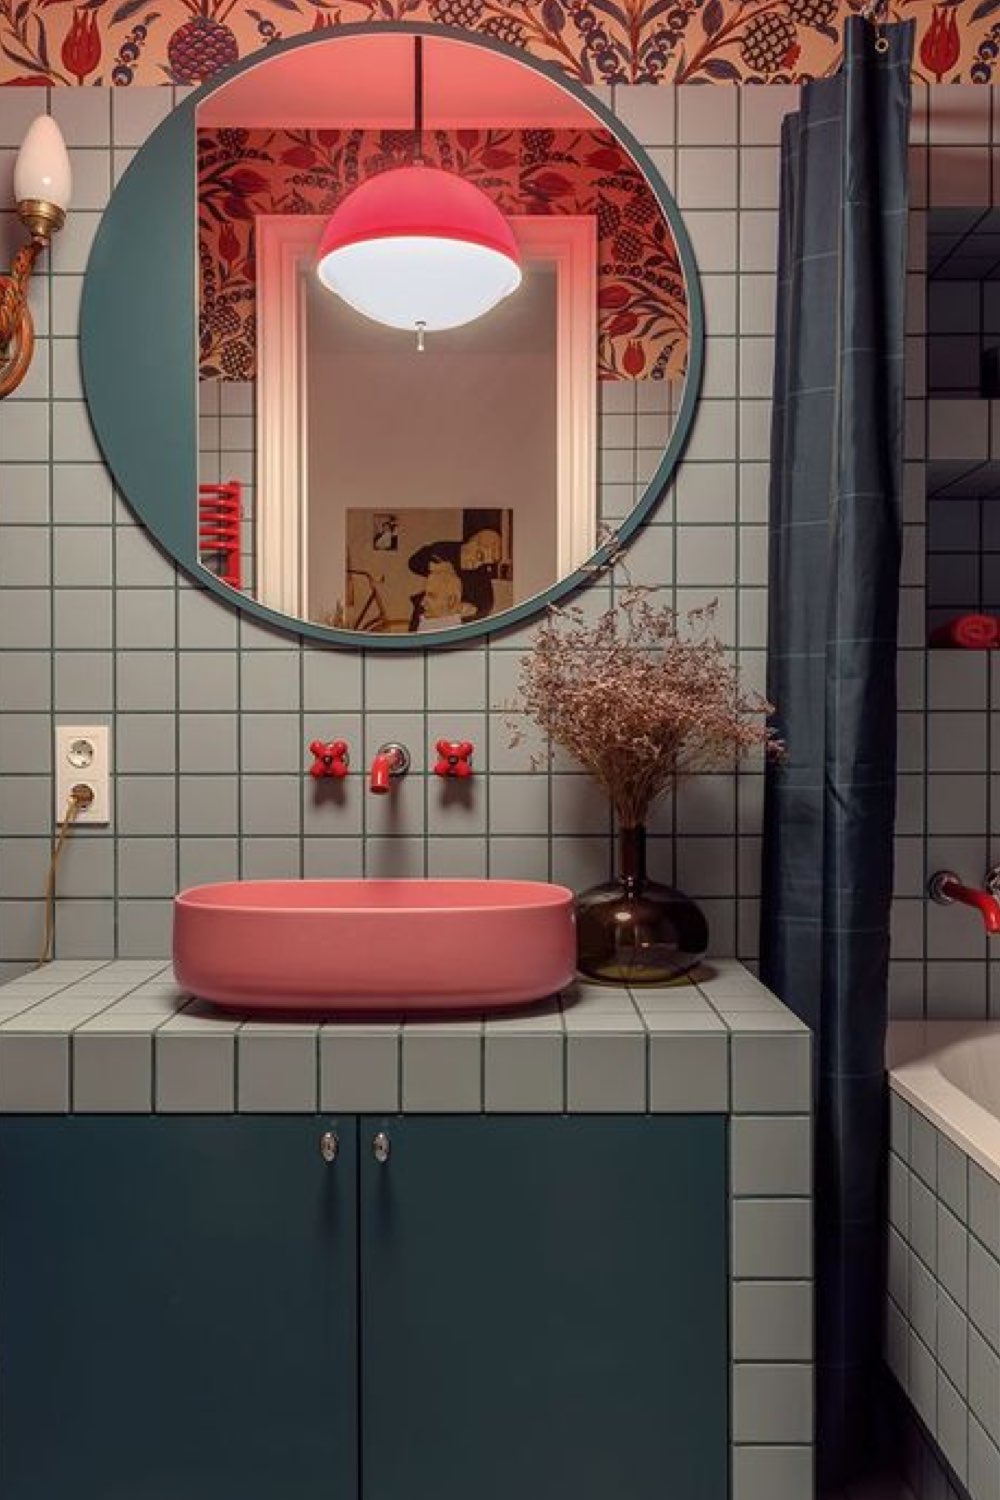 salle de bain exemple touche de couleur vasque moderne colorée orange rouge carrelage neutre gris plan vasque carrelé miroir rond